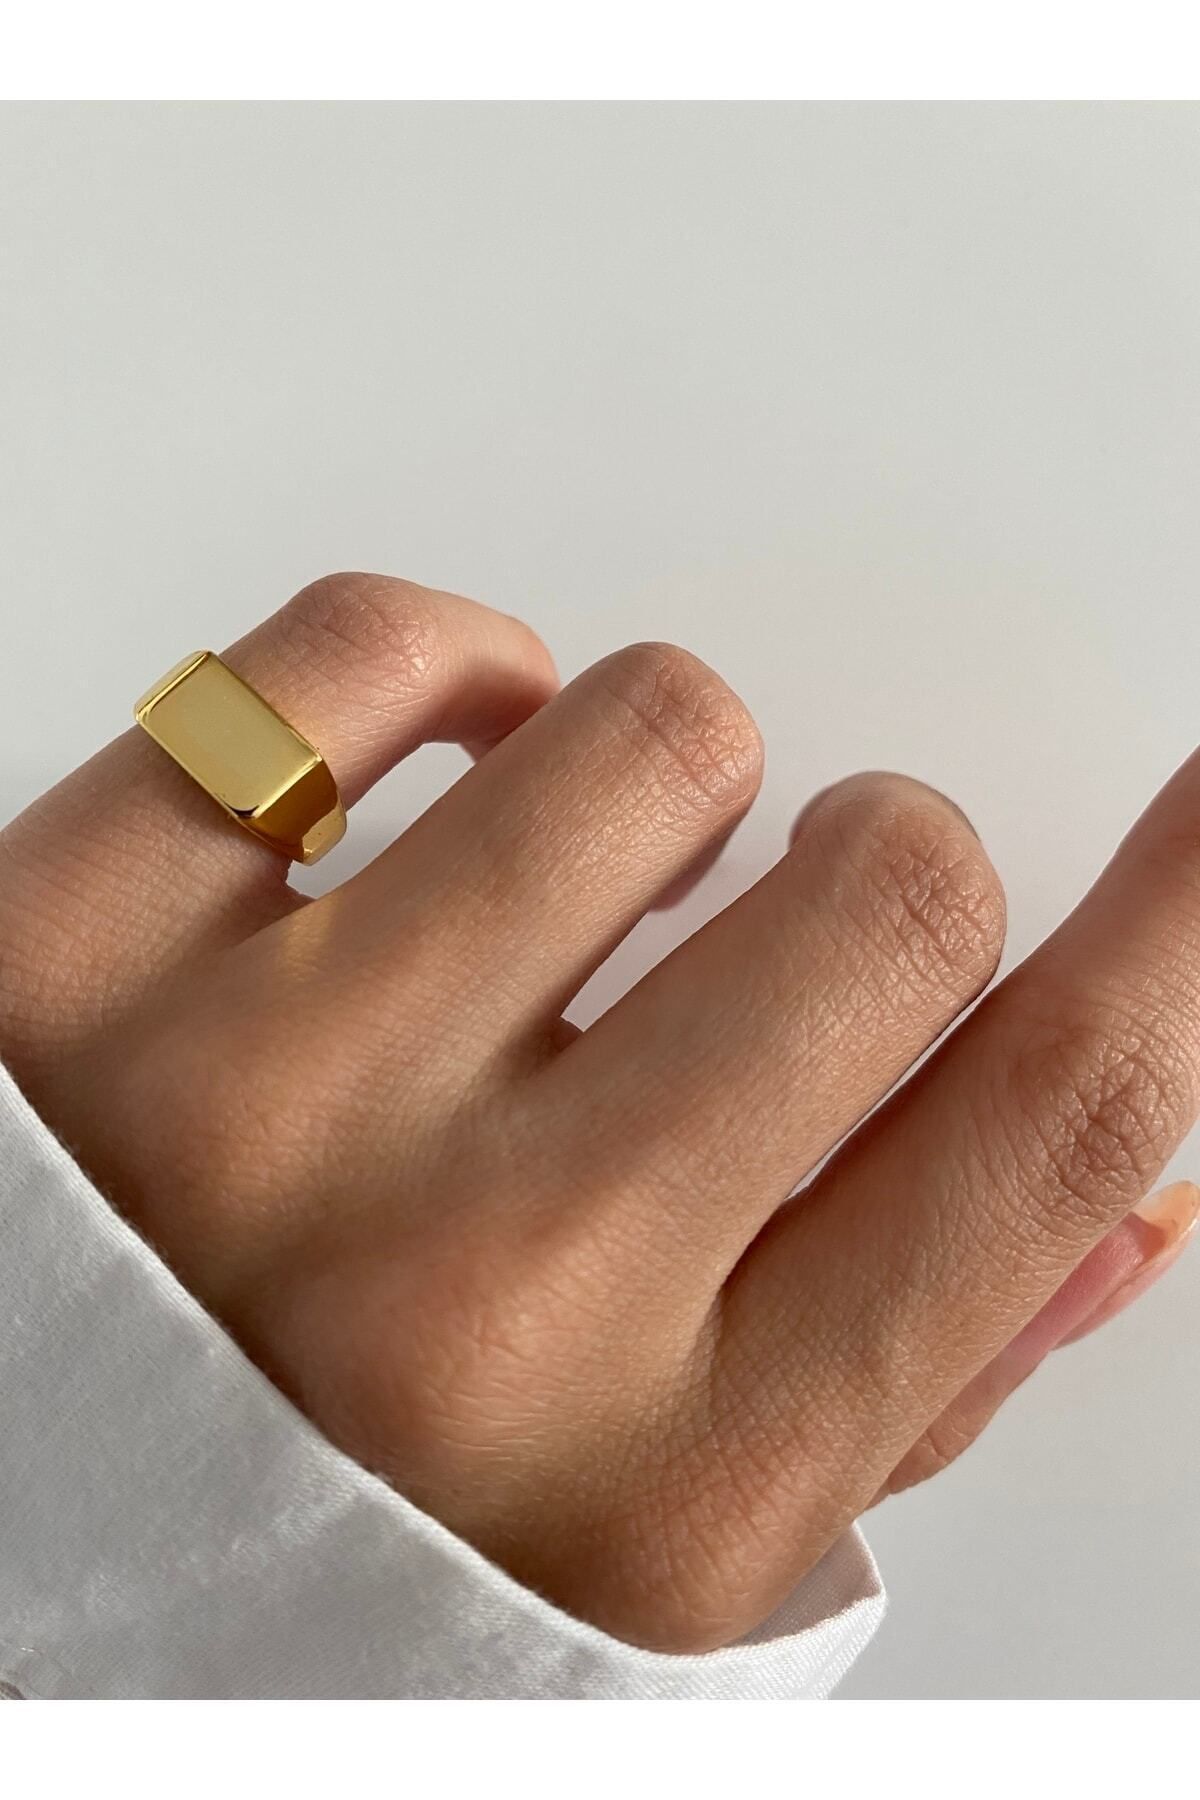 ringbox Gold Dörtgen Serçe Parmak Yüzüğü